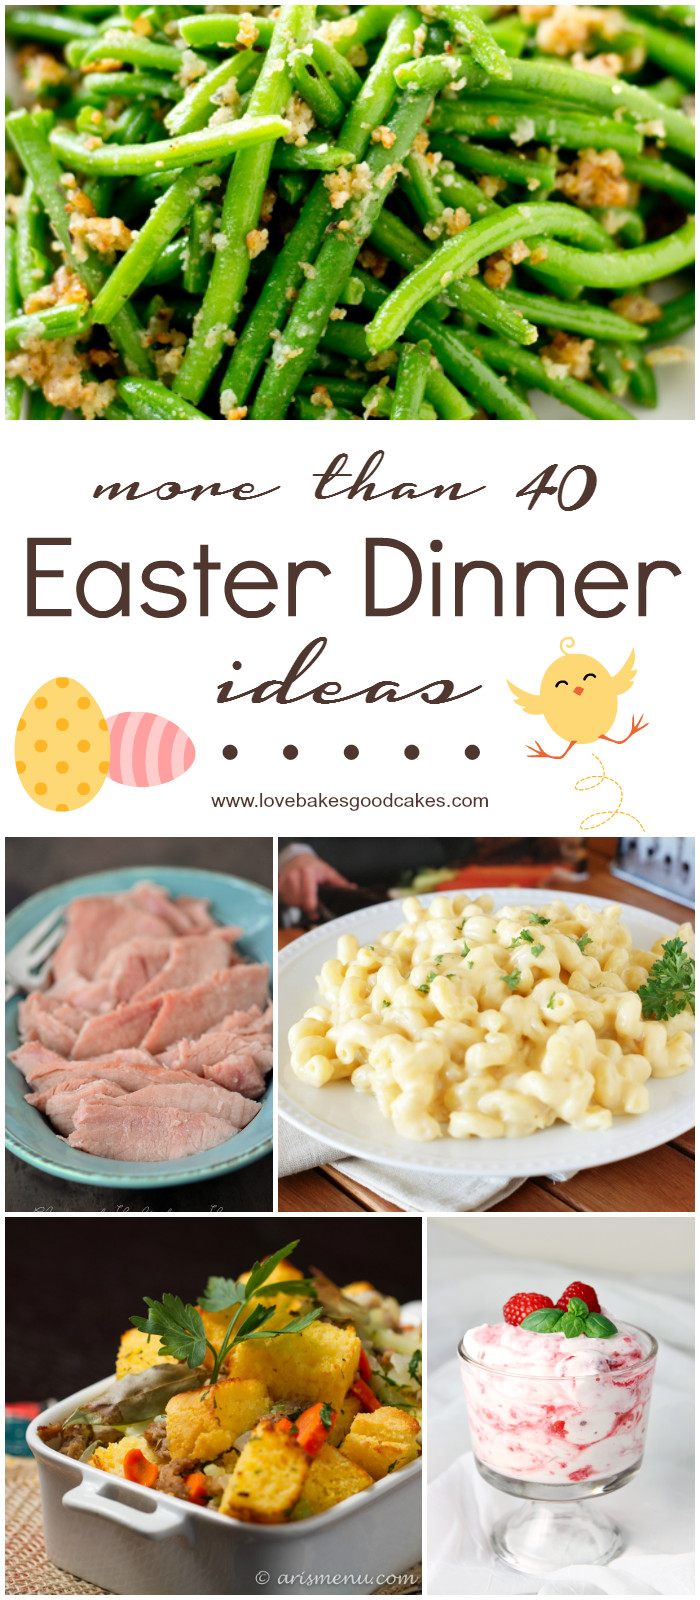 Ideas For Easter Dinner
 More than 40 Easter Dinner Ideas